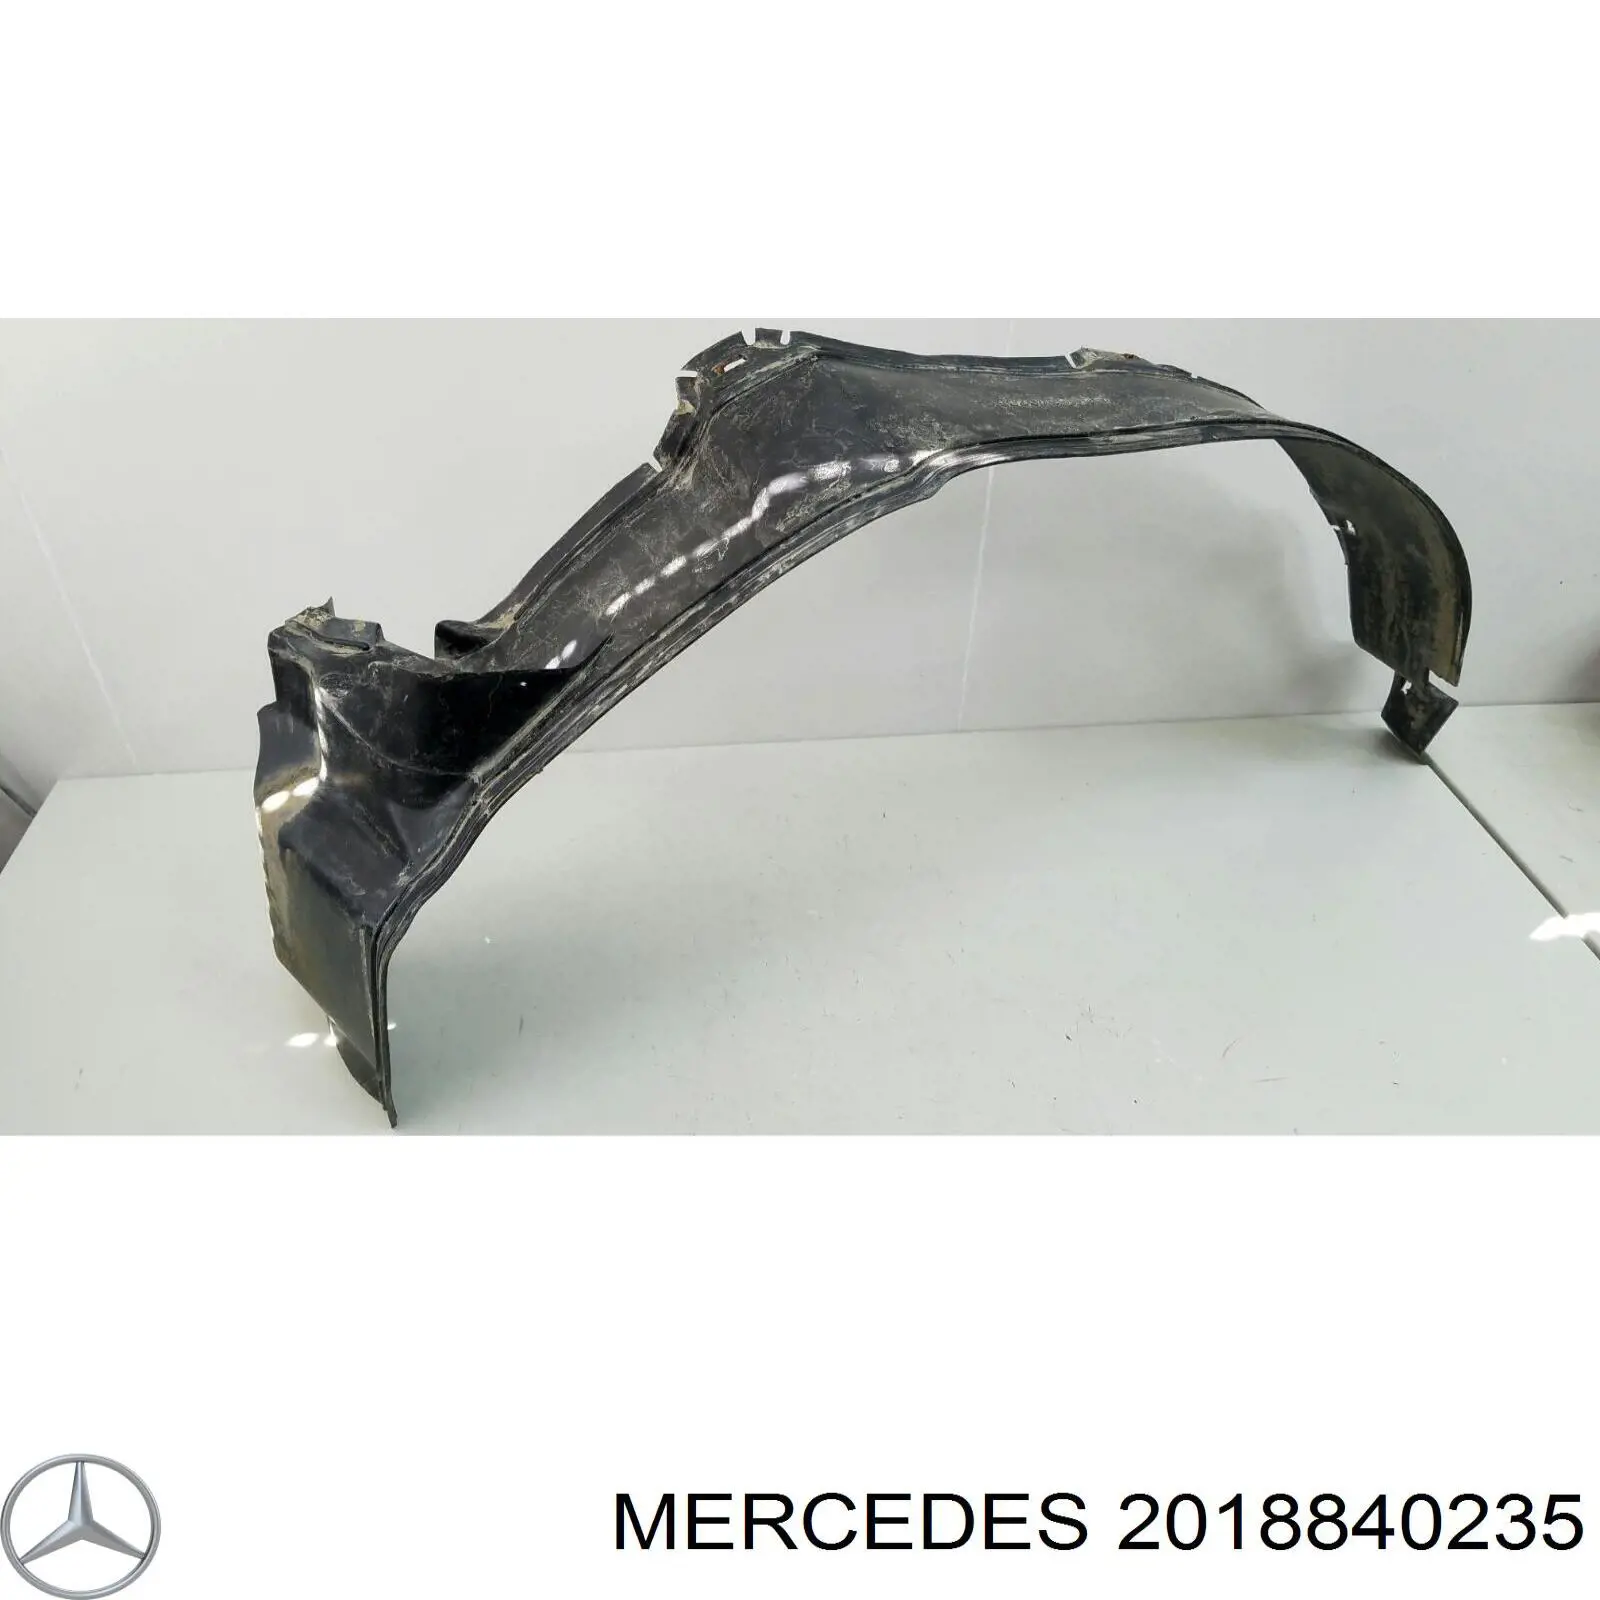 2018840235 Mercedes підкрилок переднього крила, правий